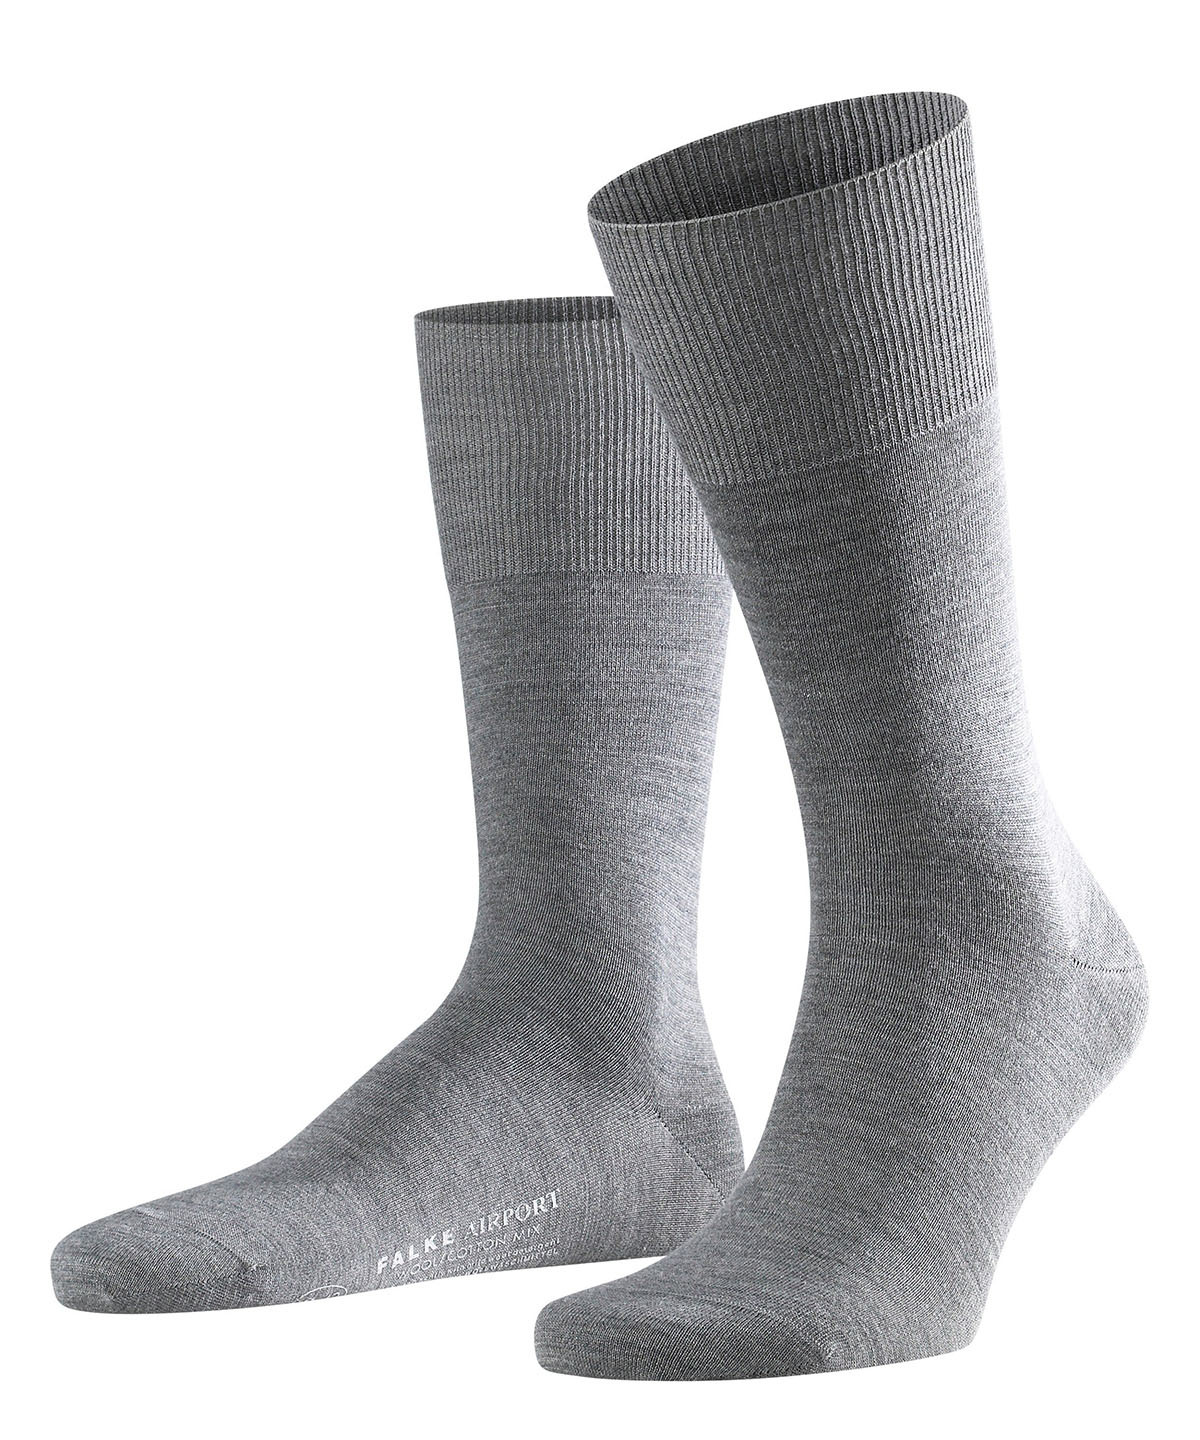 Falke Herren Socken Hersteller: Falke Bestellnummer:4004757037186